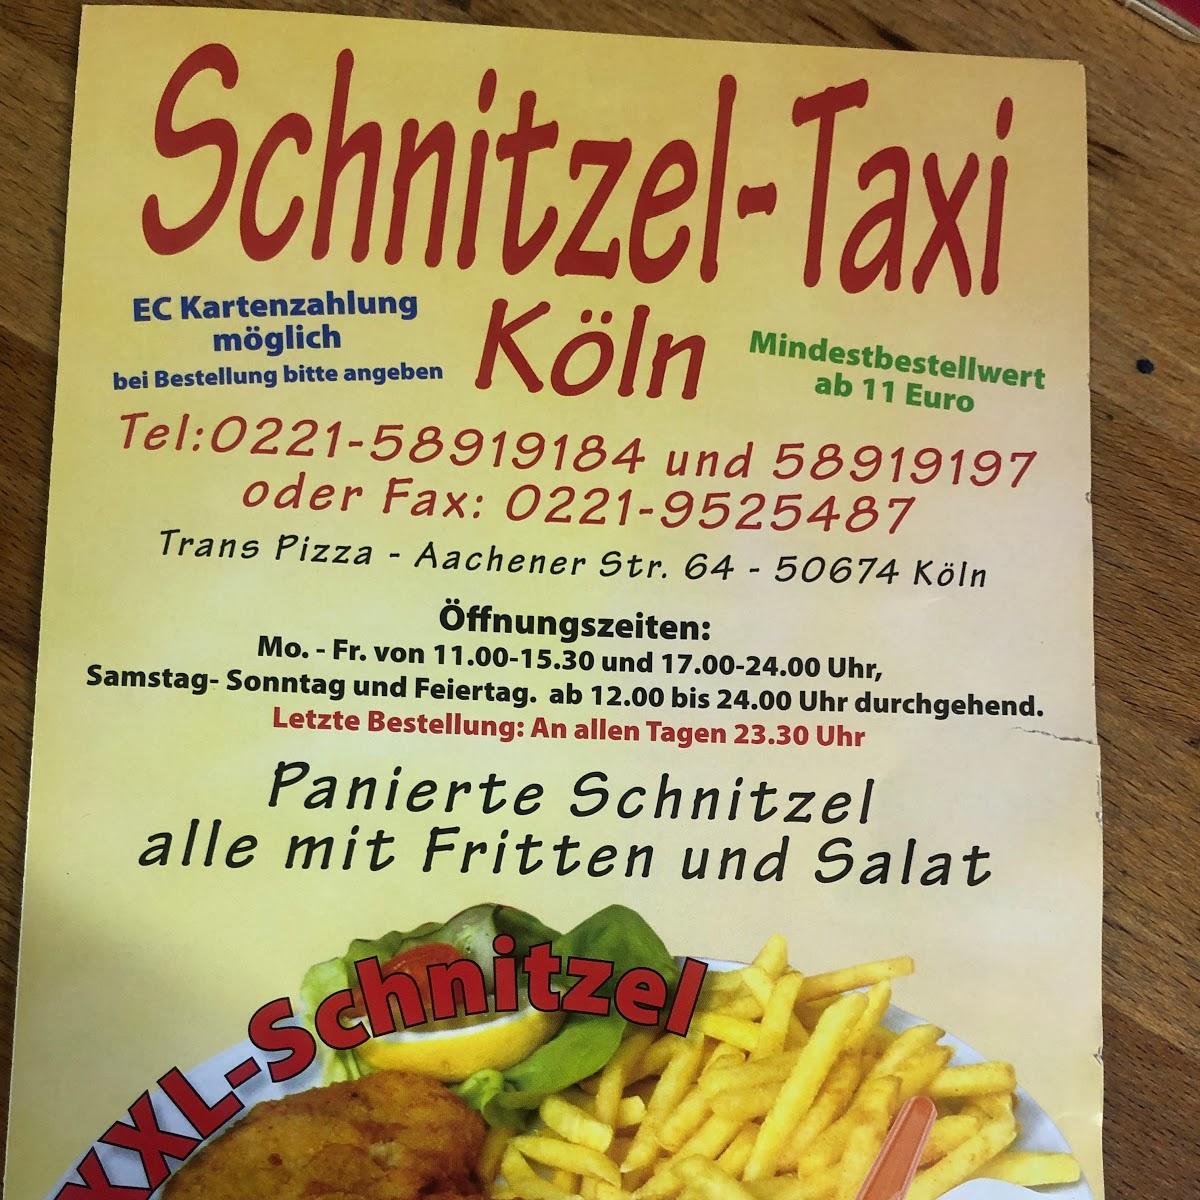 Restaurant "Schnitzel Taxi" in Köln